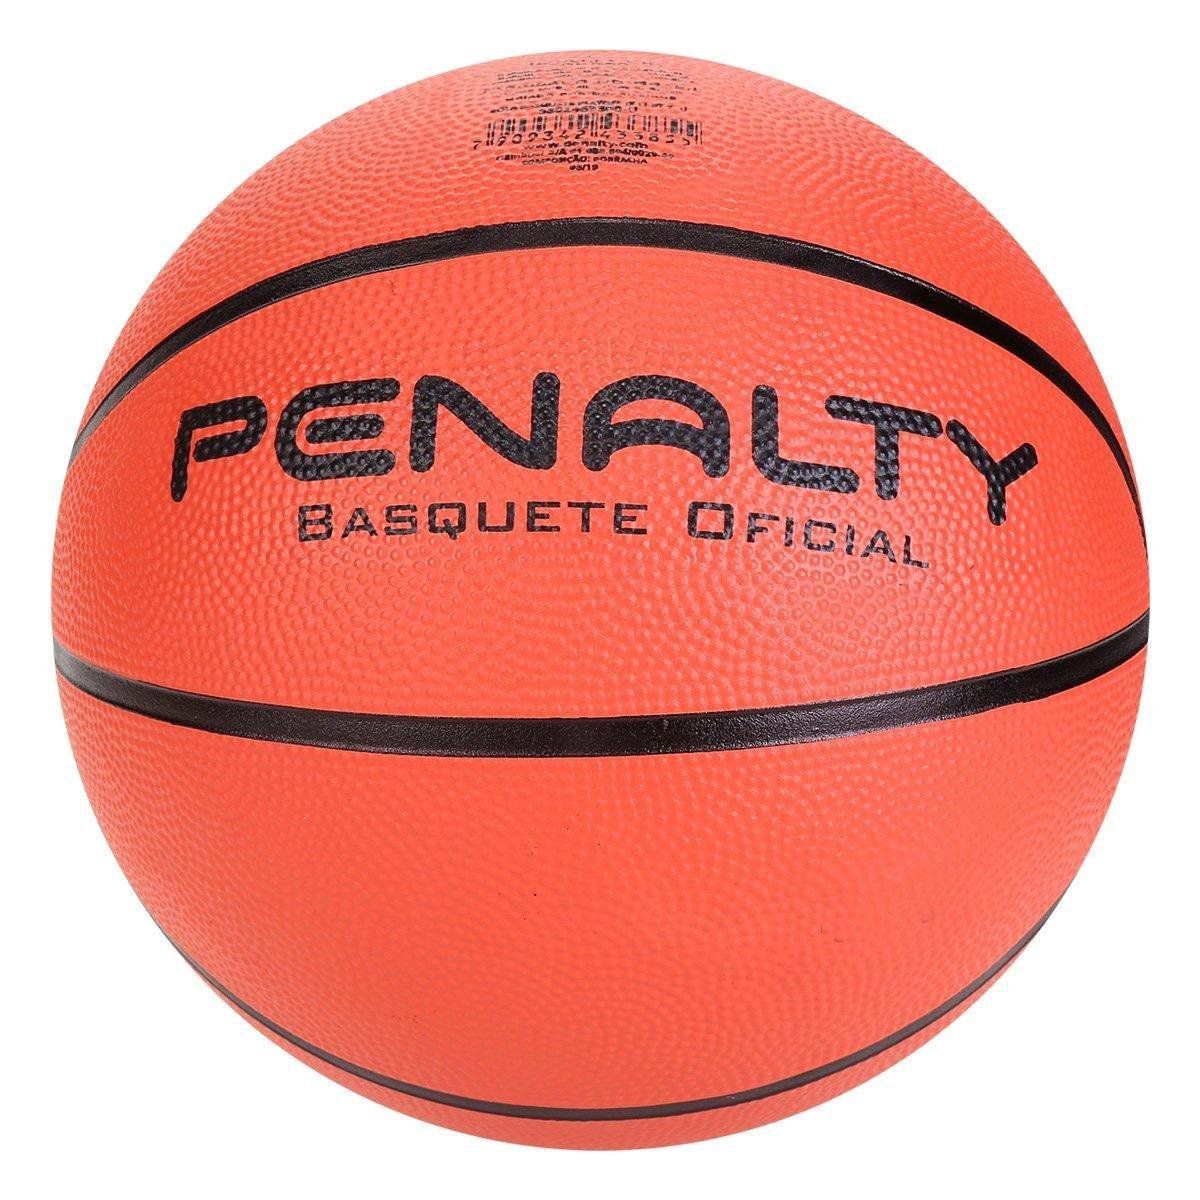 Bola de Basquete Penalty Playoff Oficial Adulto - Mercadão Dos Esportes,  loja de materiais esportivos